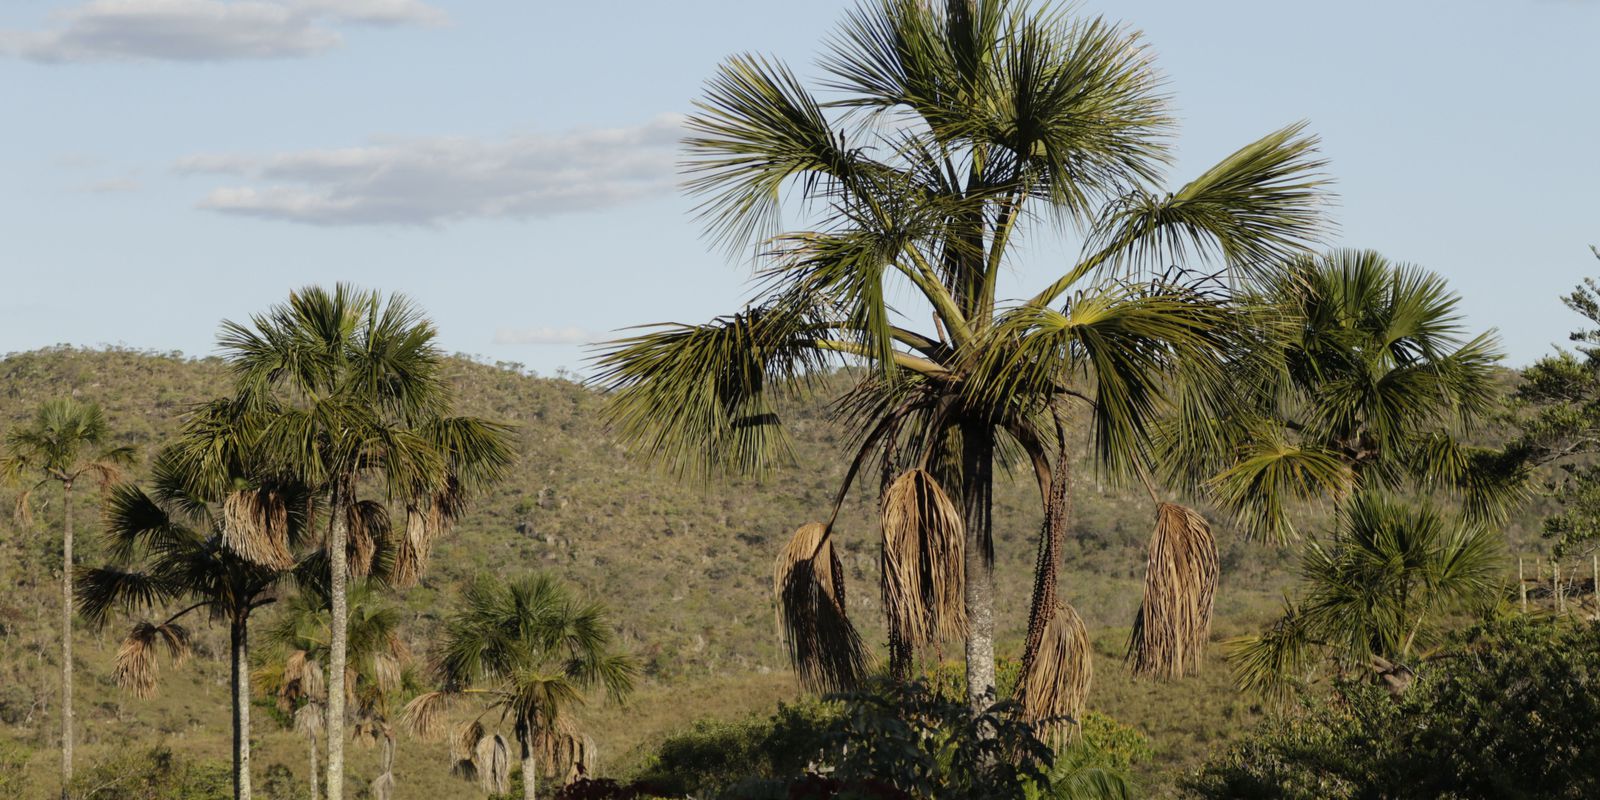 Exemplo de preservação, Quilombo Kalunga mantém nativo 83% do Cerrado